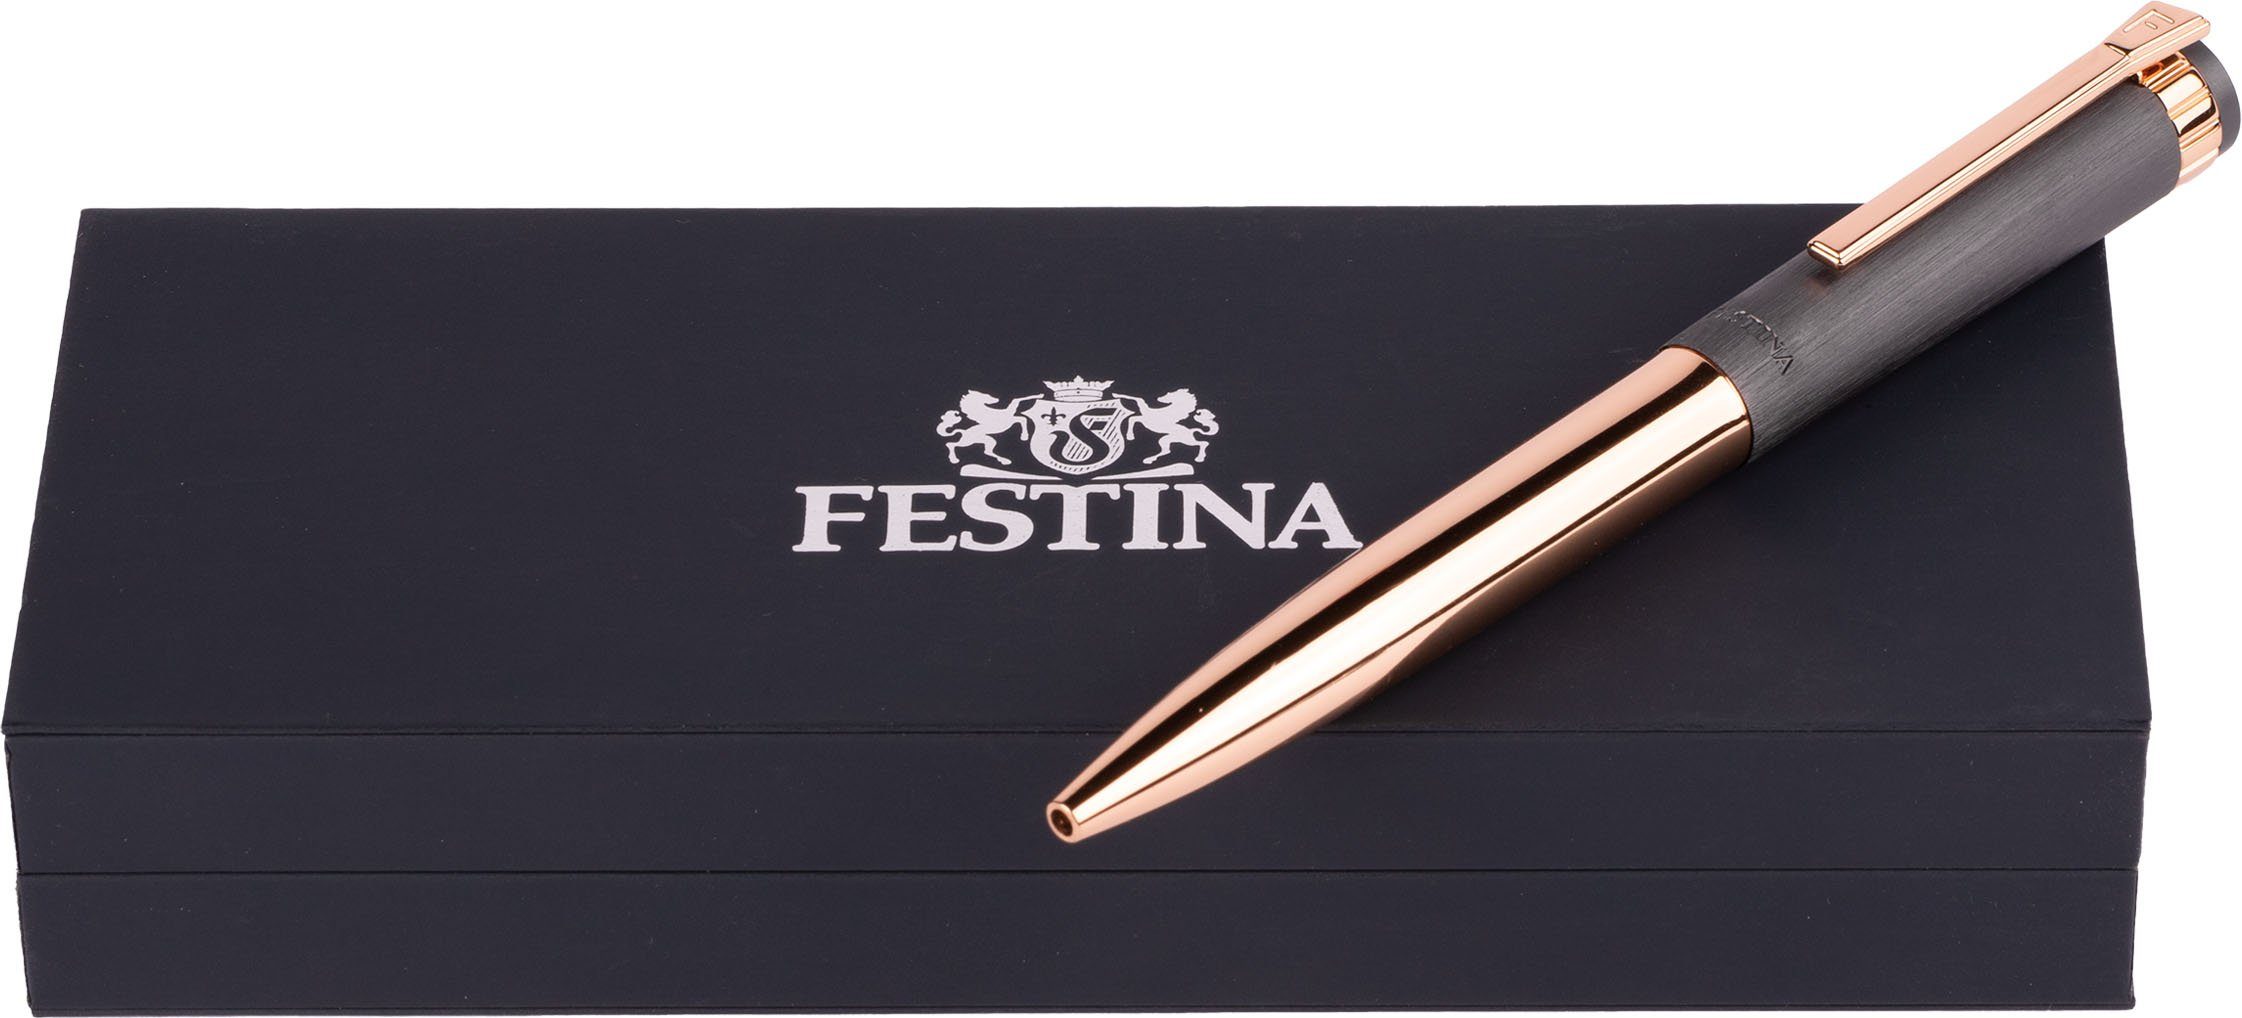 Festina inklusive FWS4107/D, ideal auch Etui, als Prestige, Geschenk Kugelschreiber